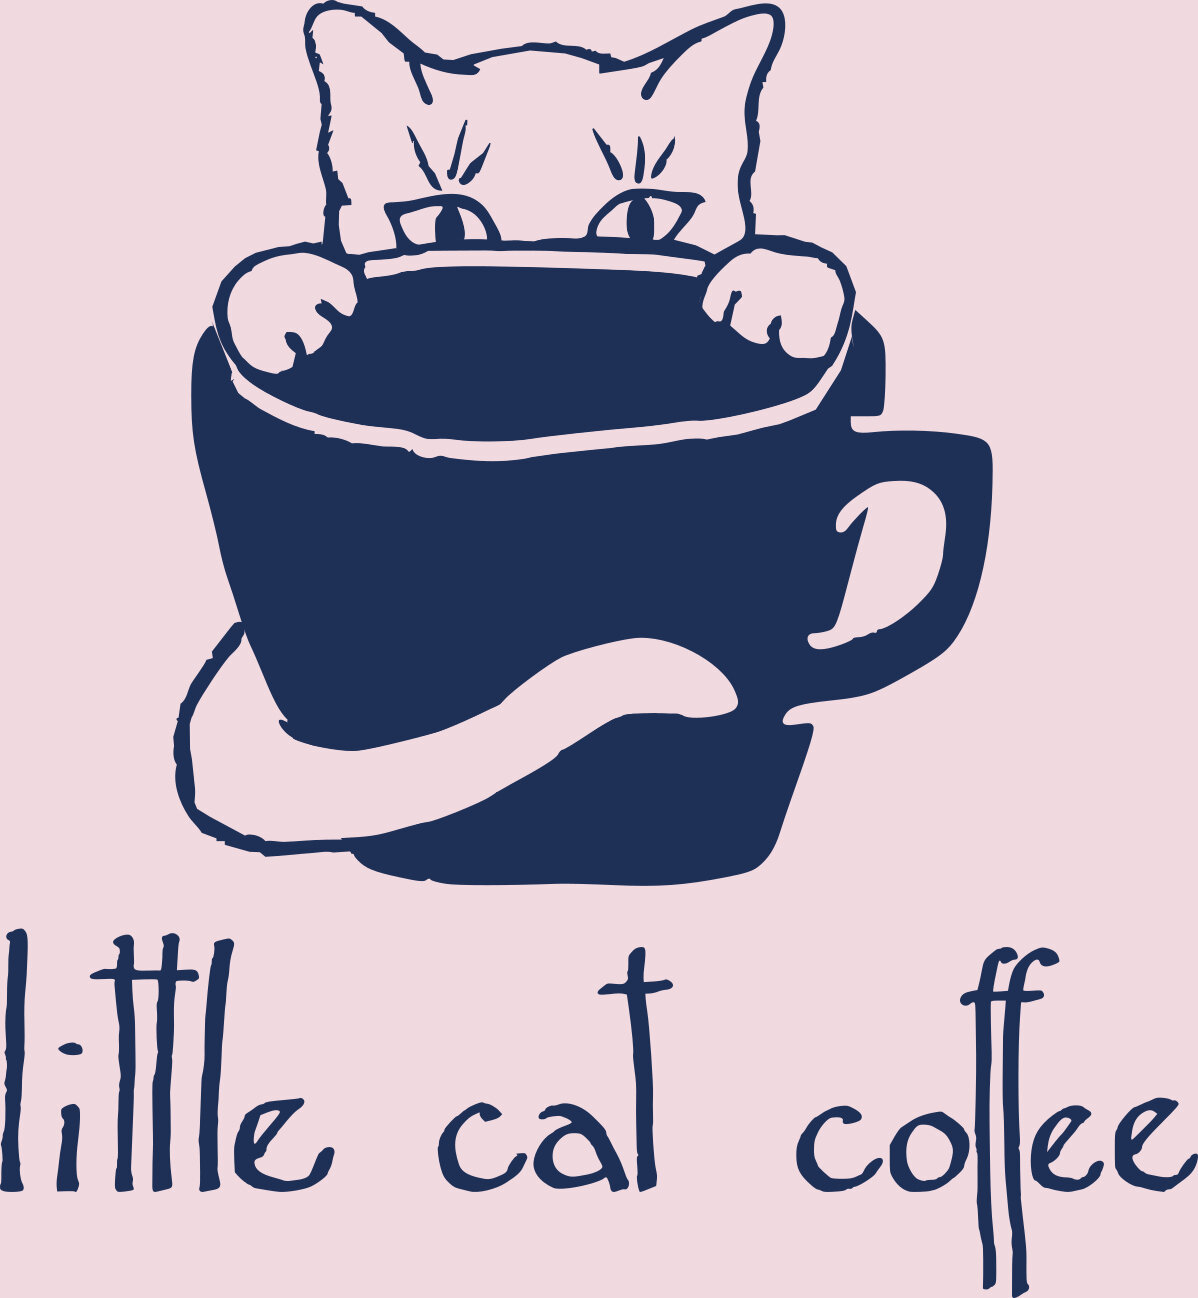 Little Cat Coffee